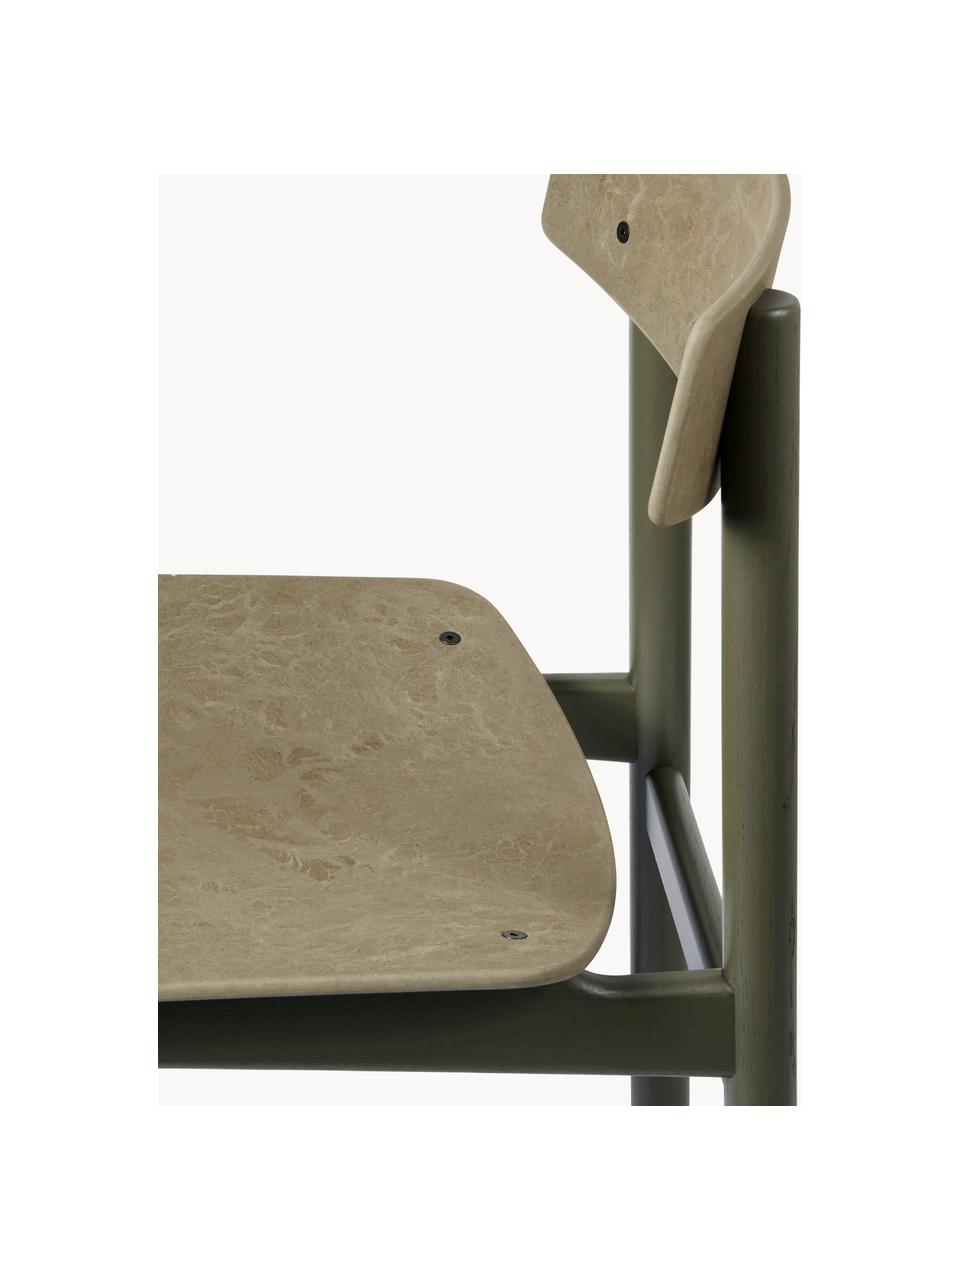 Houten stoel Conscious, Frame: eikenhout Dit product is , Olijfgroen, eikenhout olijfgroen gelakt, B 47 x D 47 cm